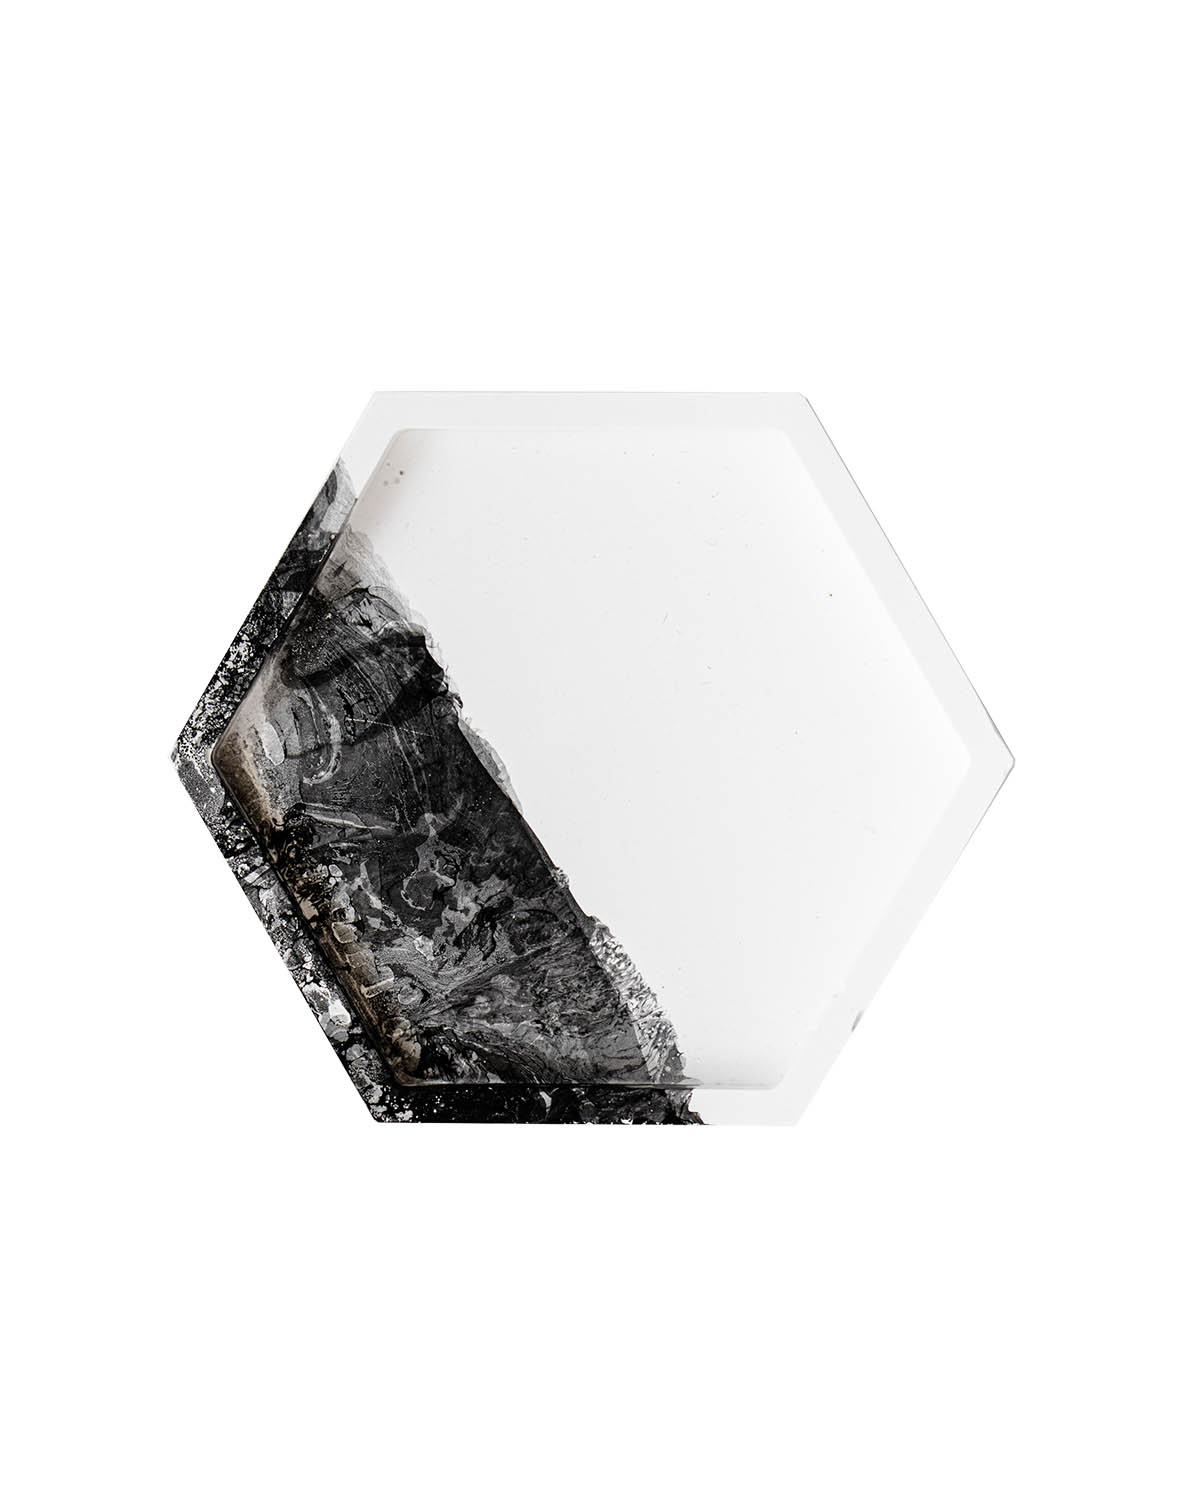 Шестиугольная подставка для хранения украшений Hexagon Black, тарелочка сота ручной работы с декором